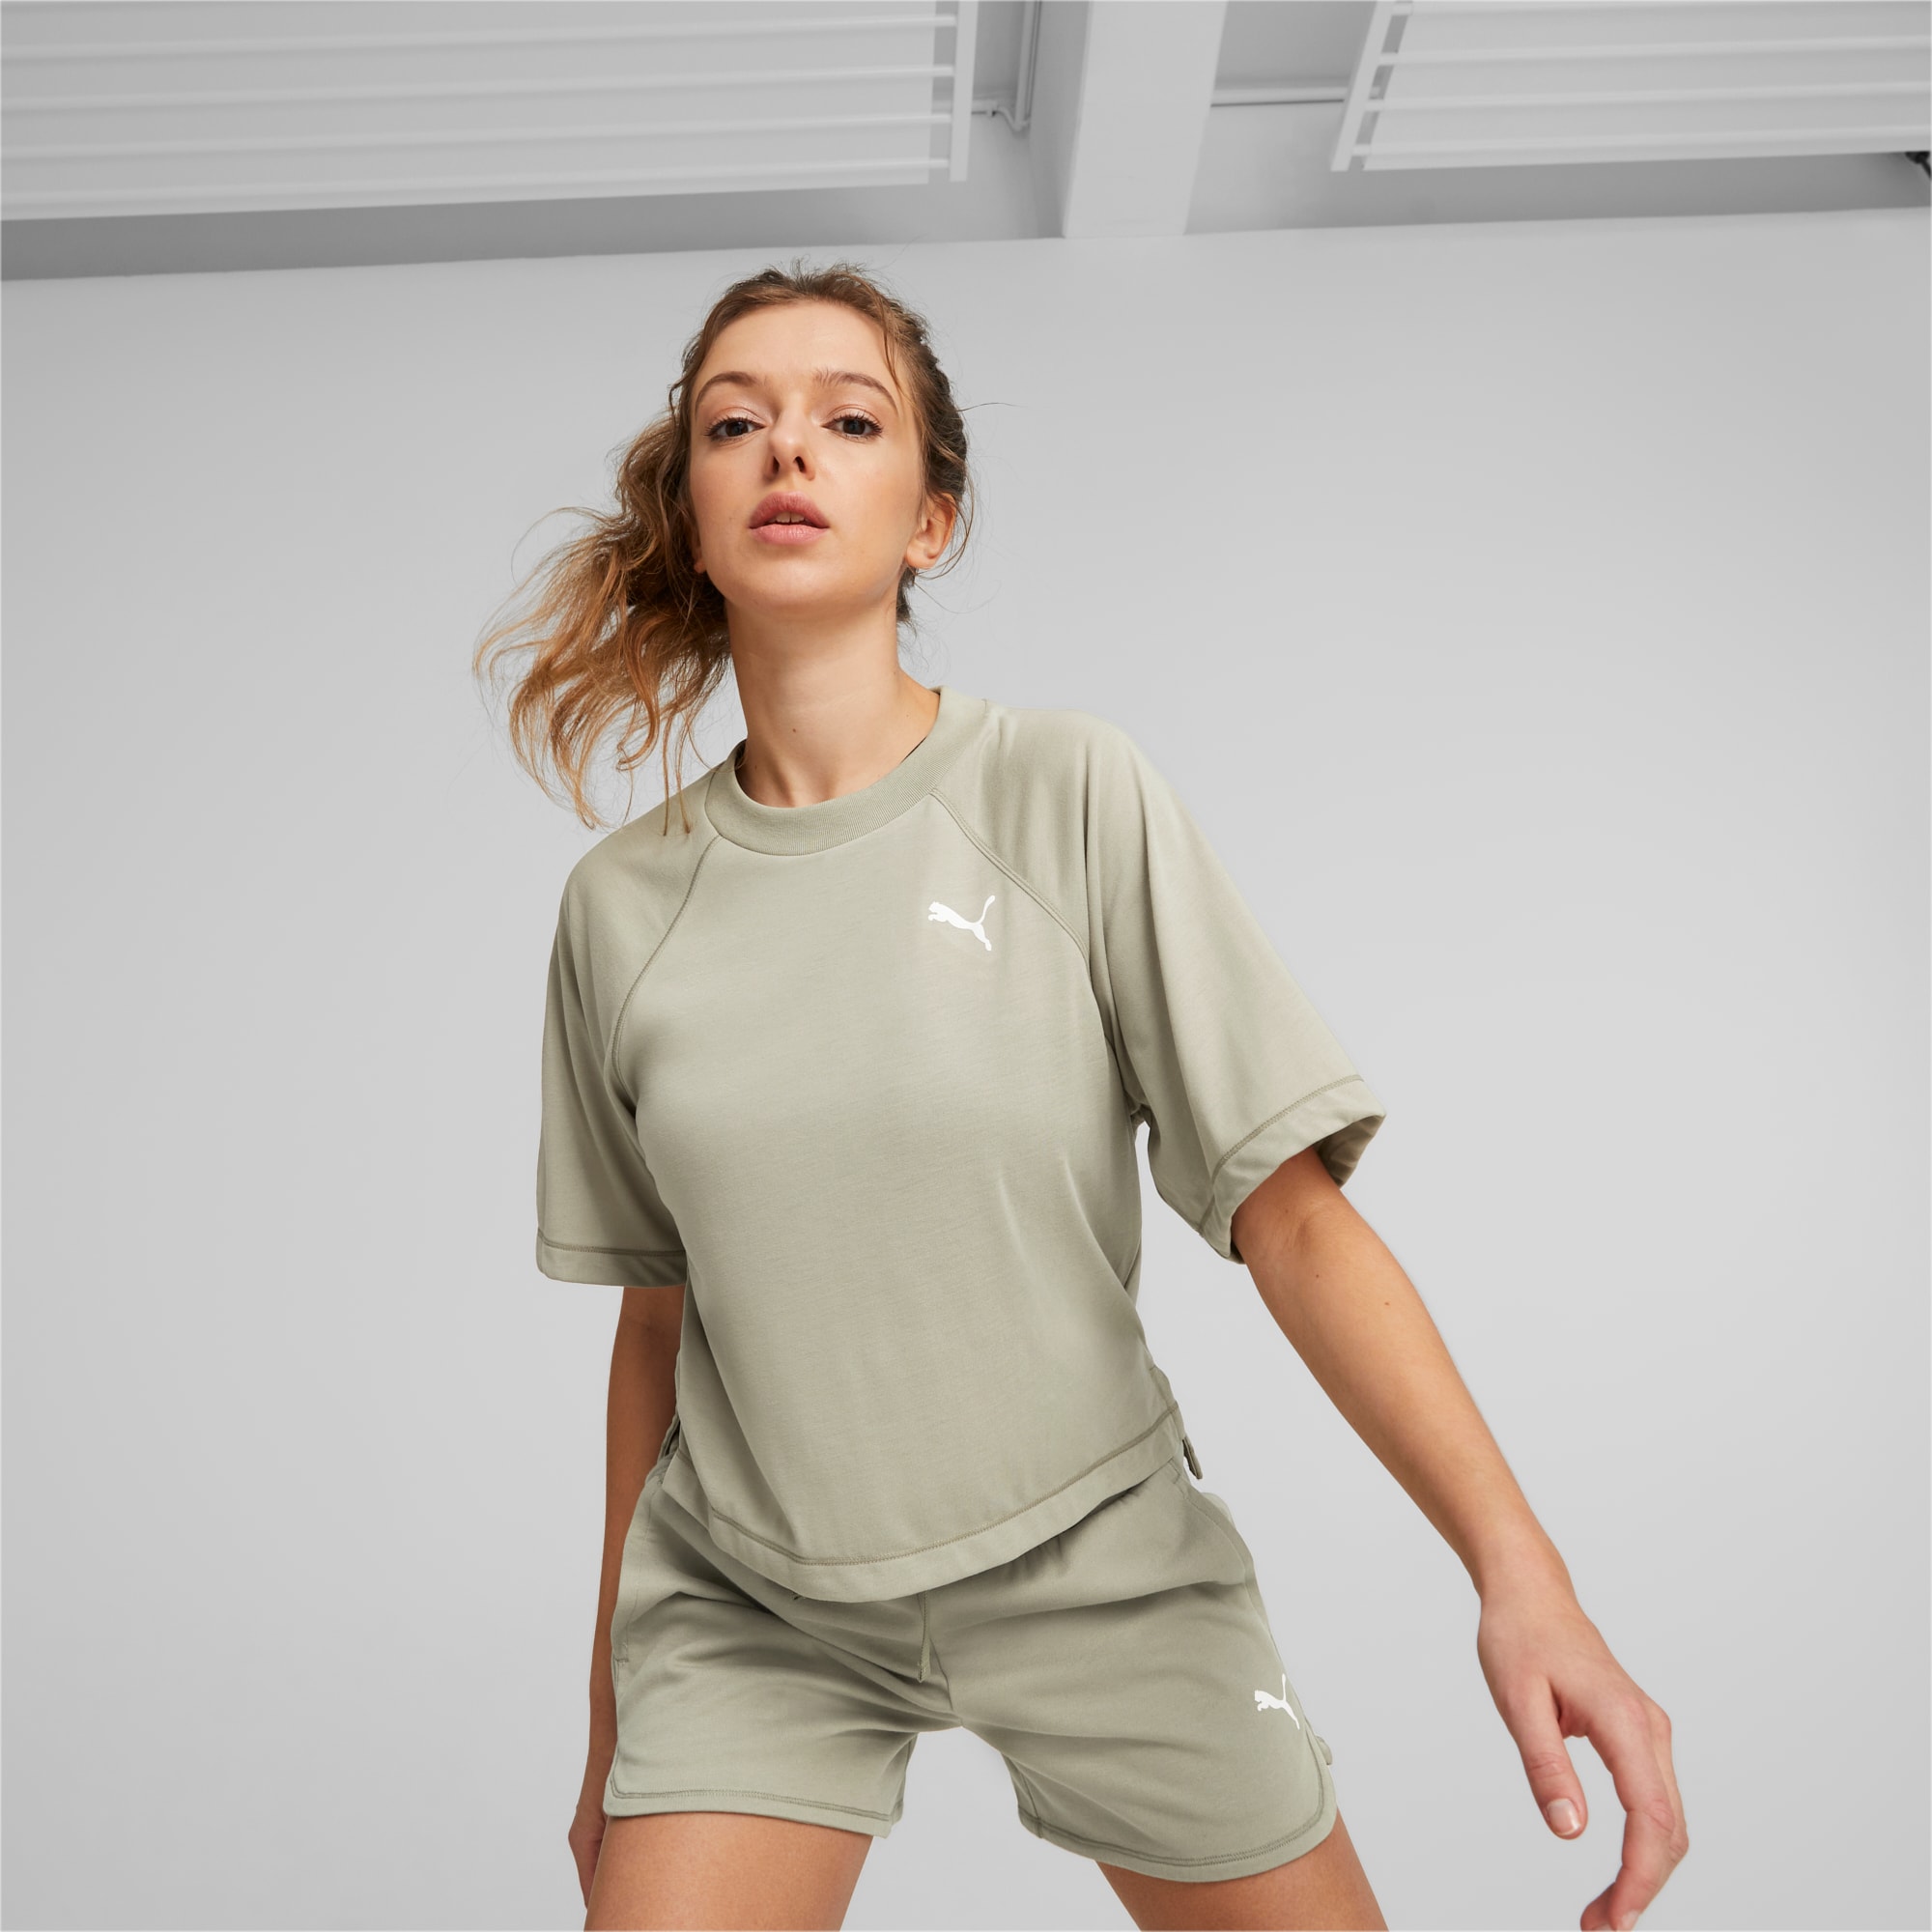 Sporty Femme : t-shirt sport femme